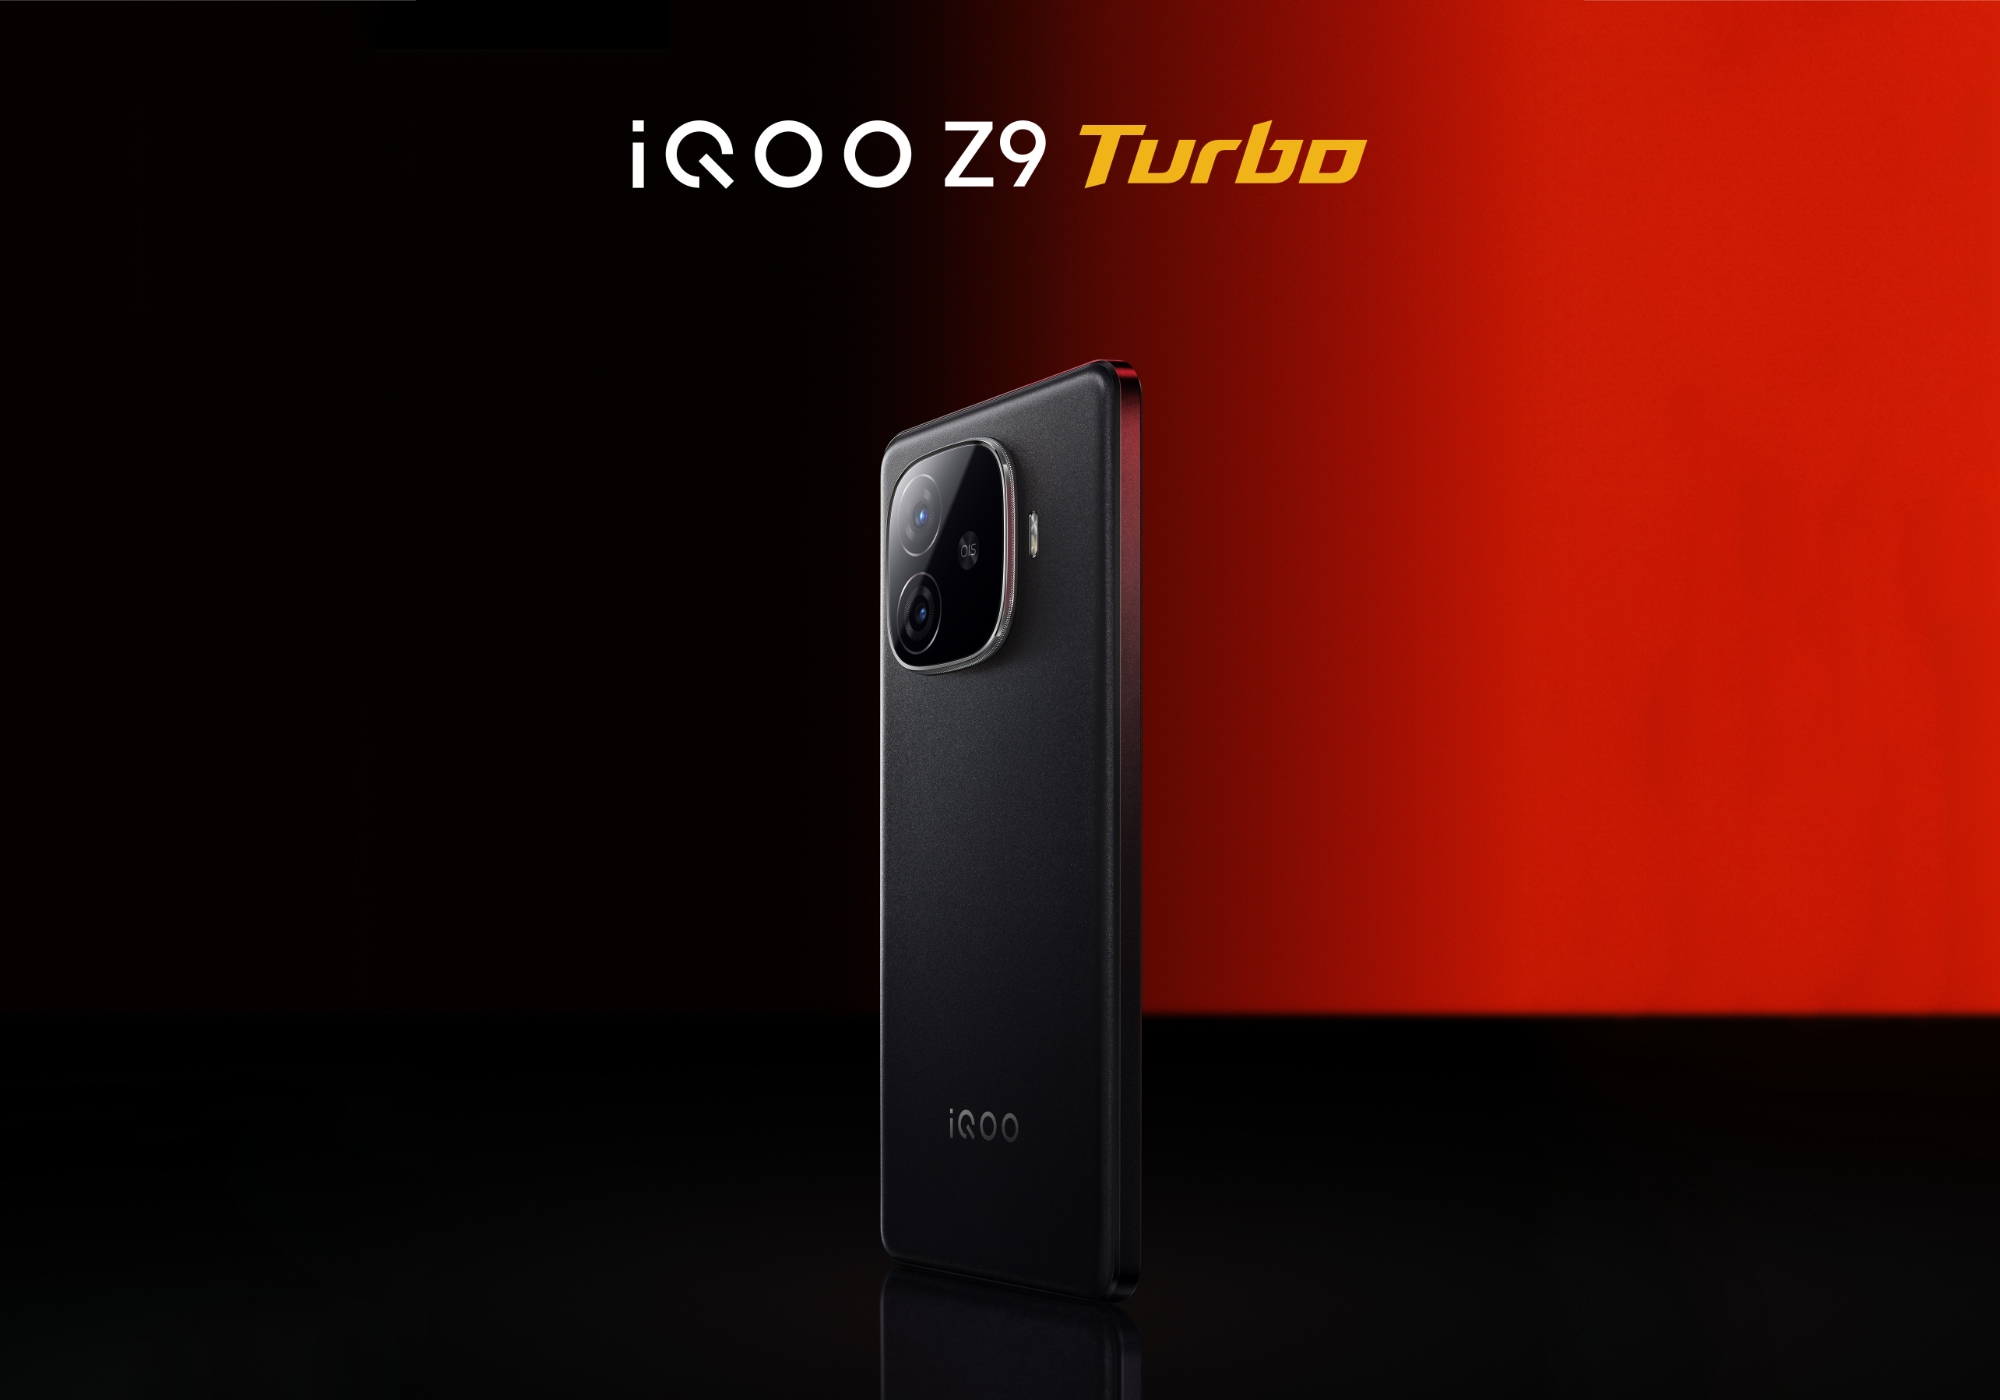 Sem esperar pela apresentação: vivo revelou o aparecimento do iQOO Z9 Turbo